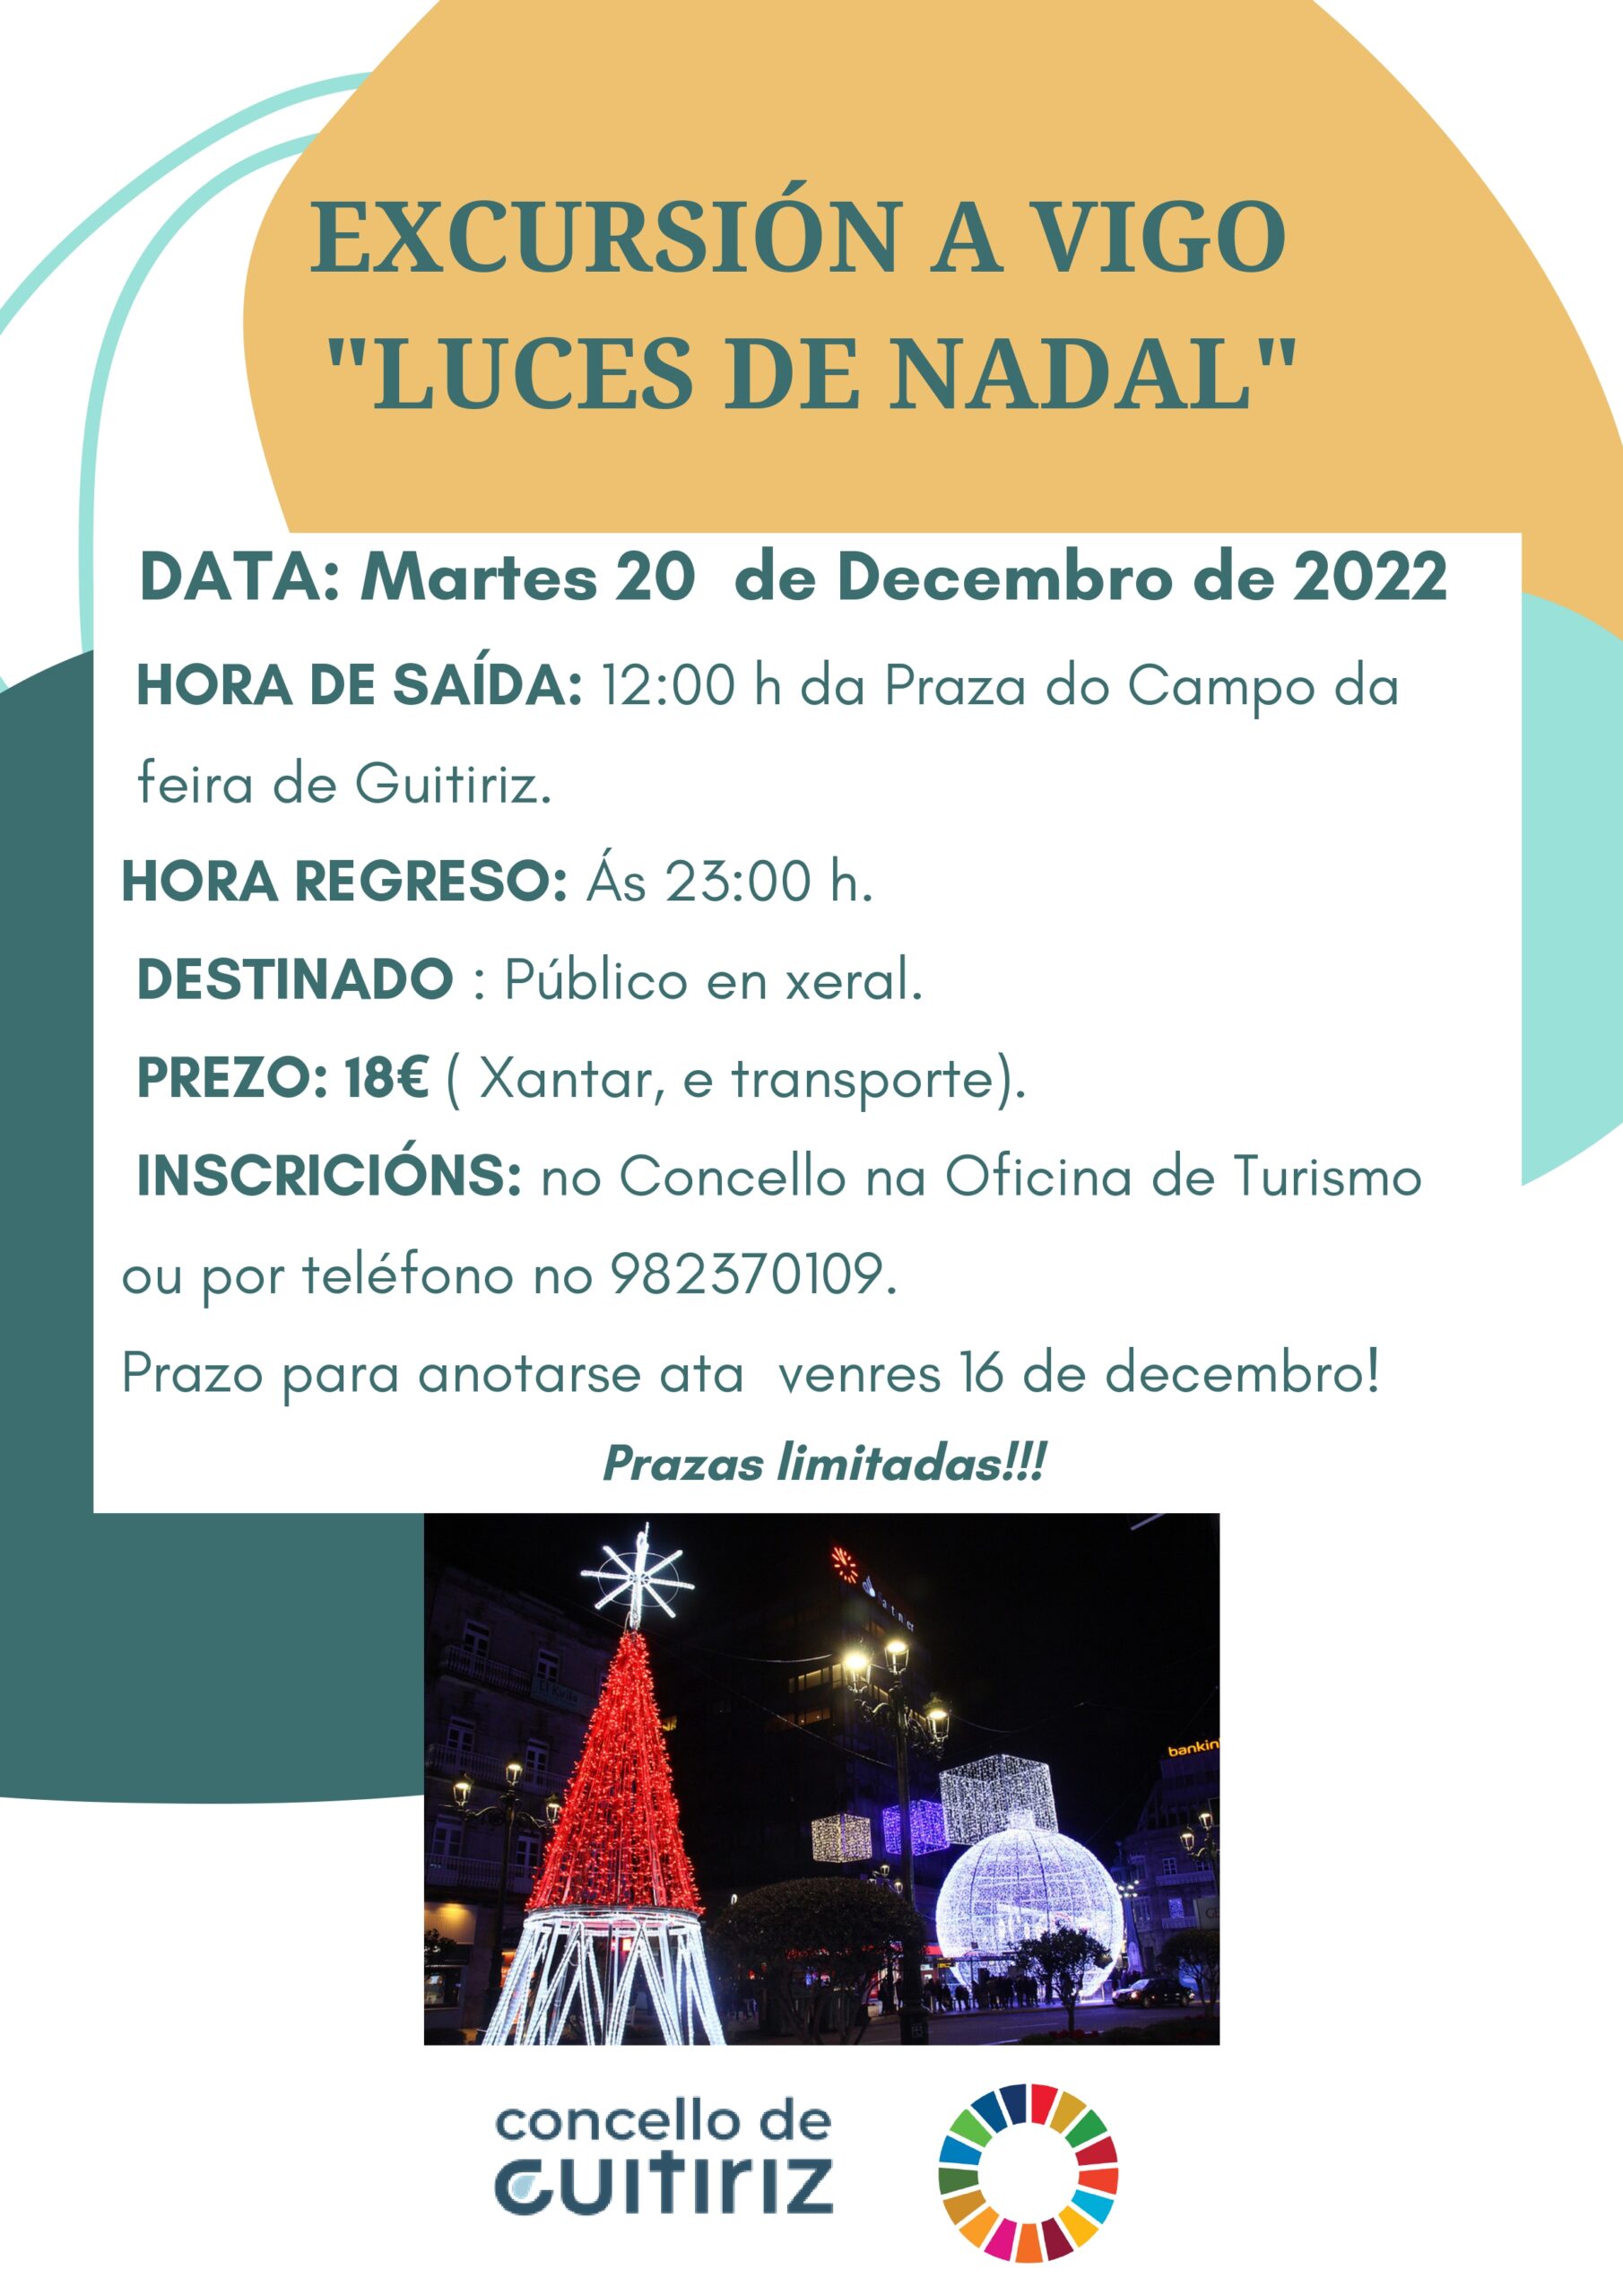 Excursión a Vigo para ver as luces de Nadal da cidade - Guitiriz